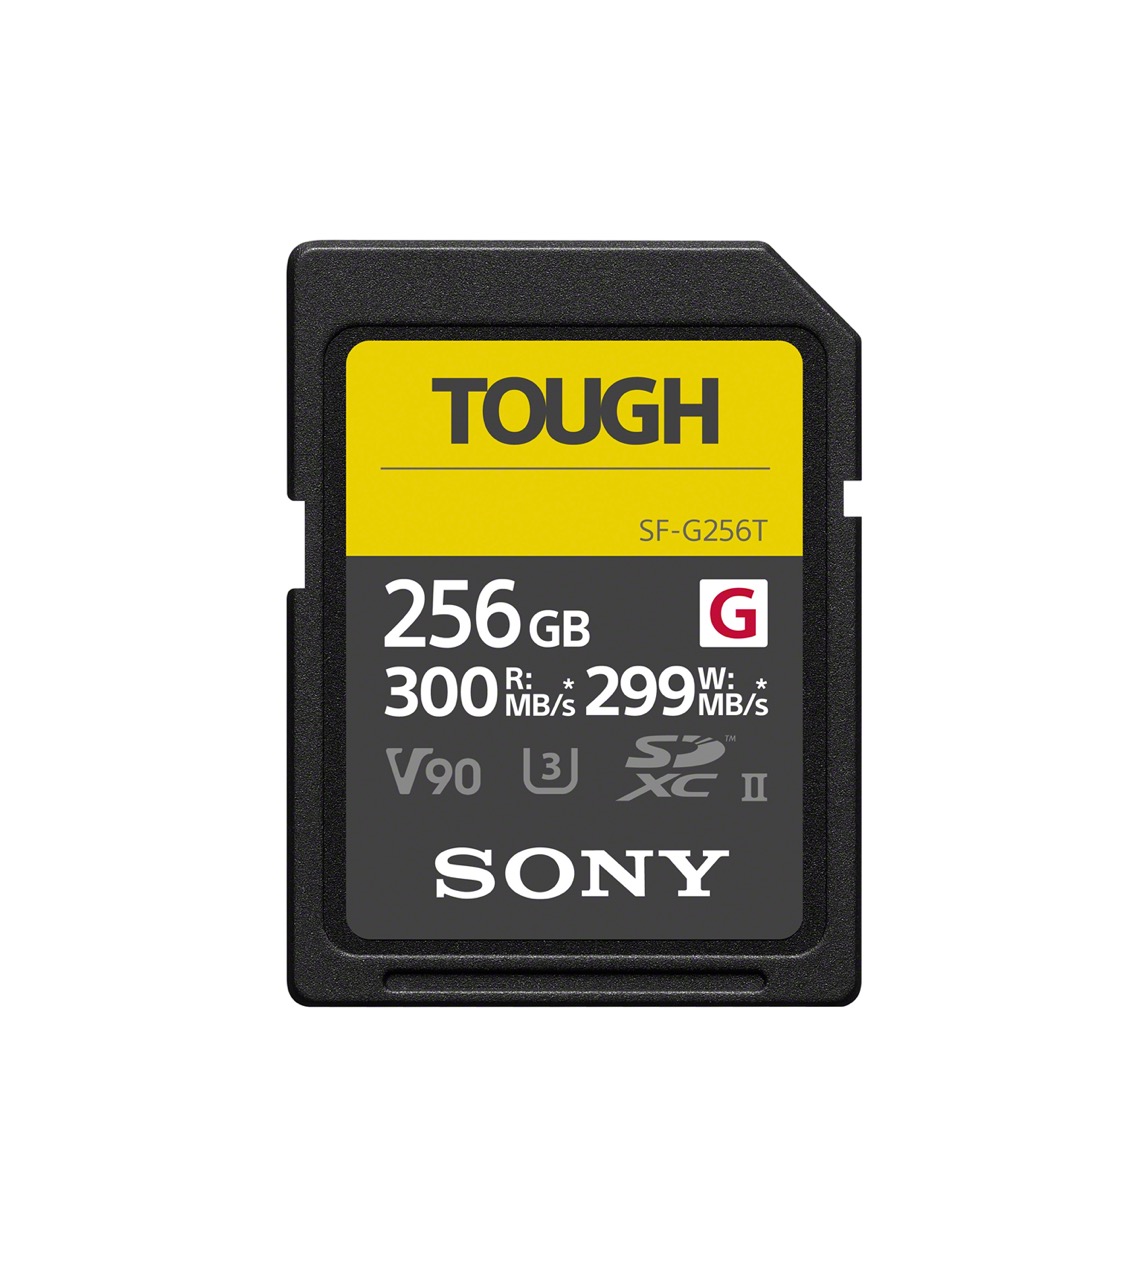 256GB TOUGH SD Memory Cards